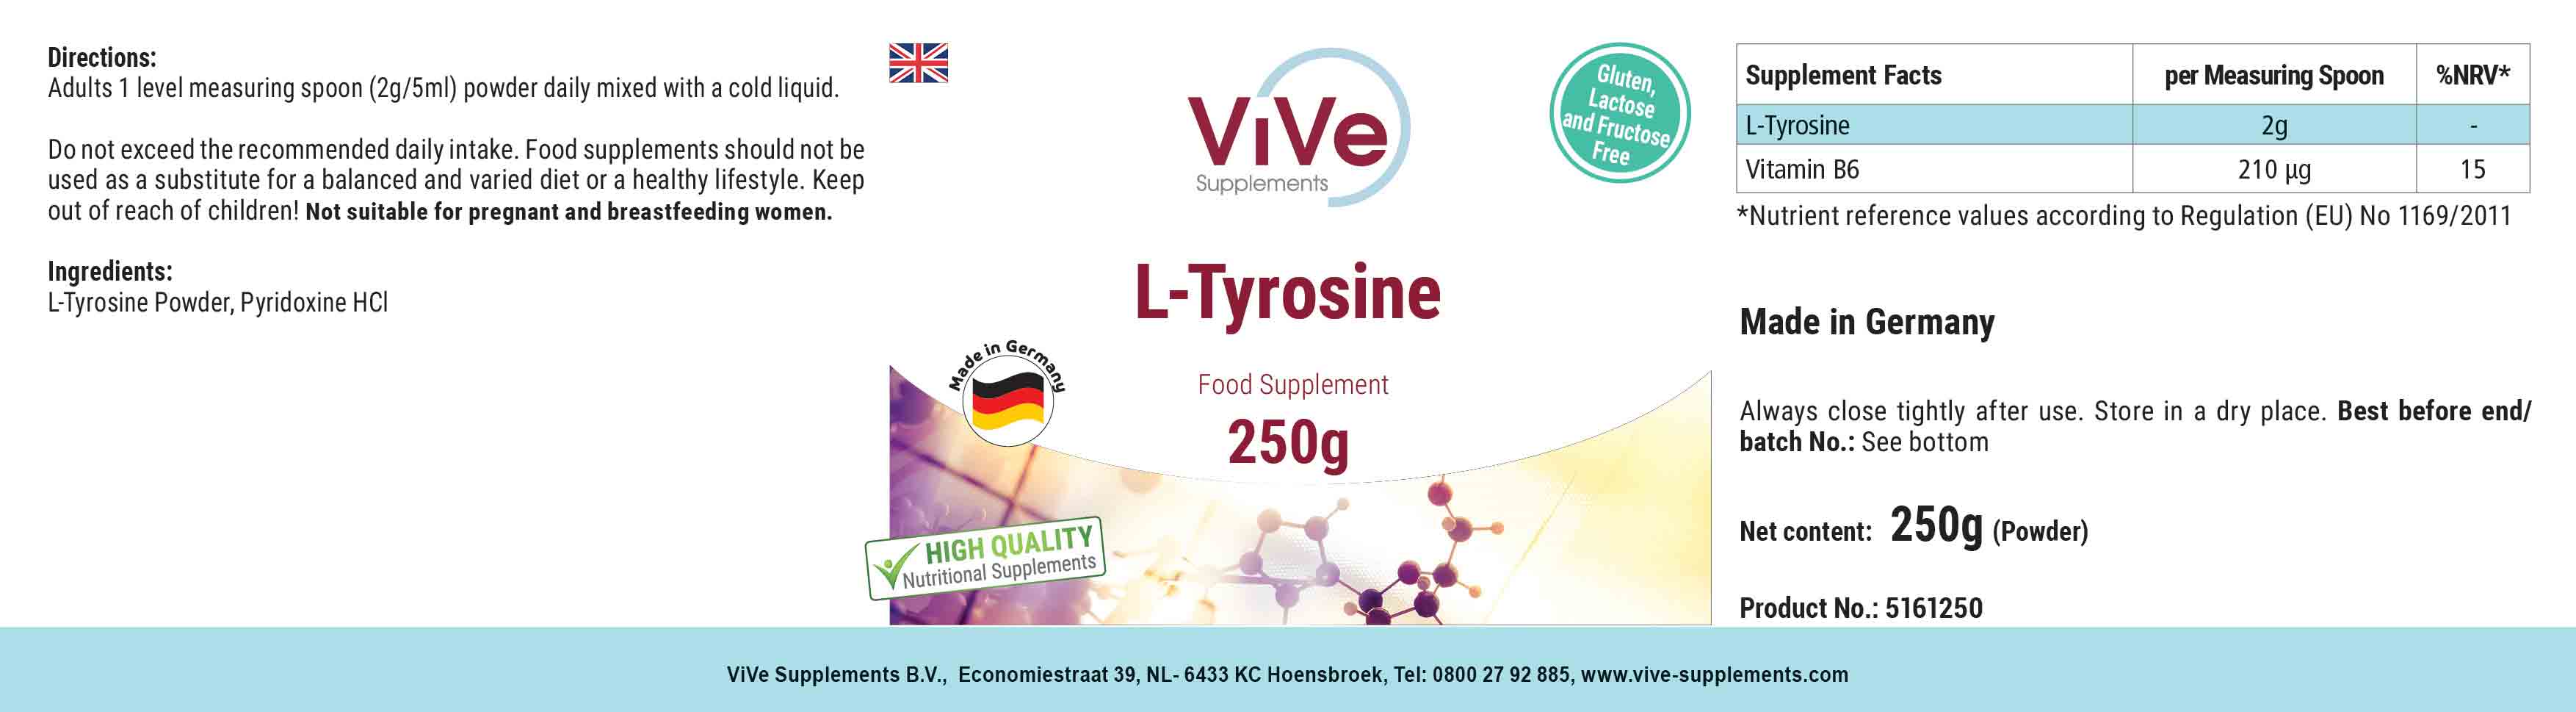 L-Tirosina en polvo 250mg + Vitamina B6